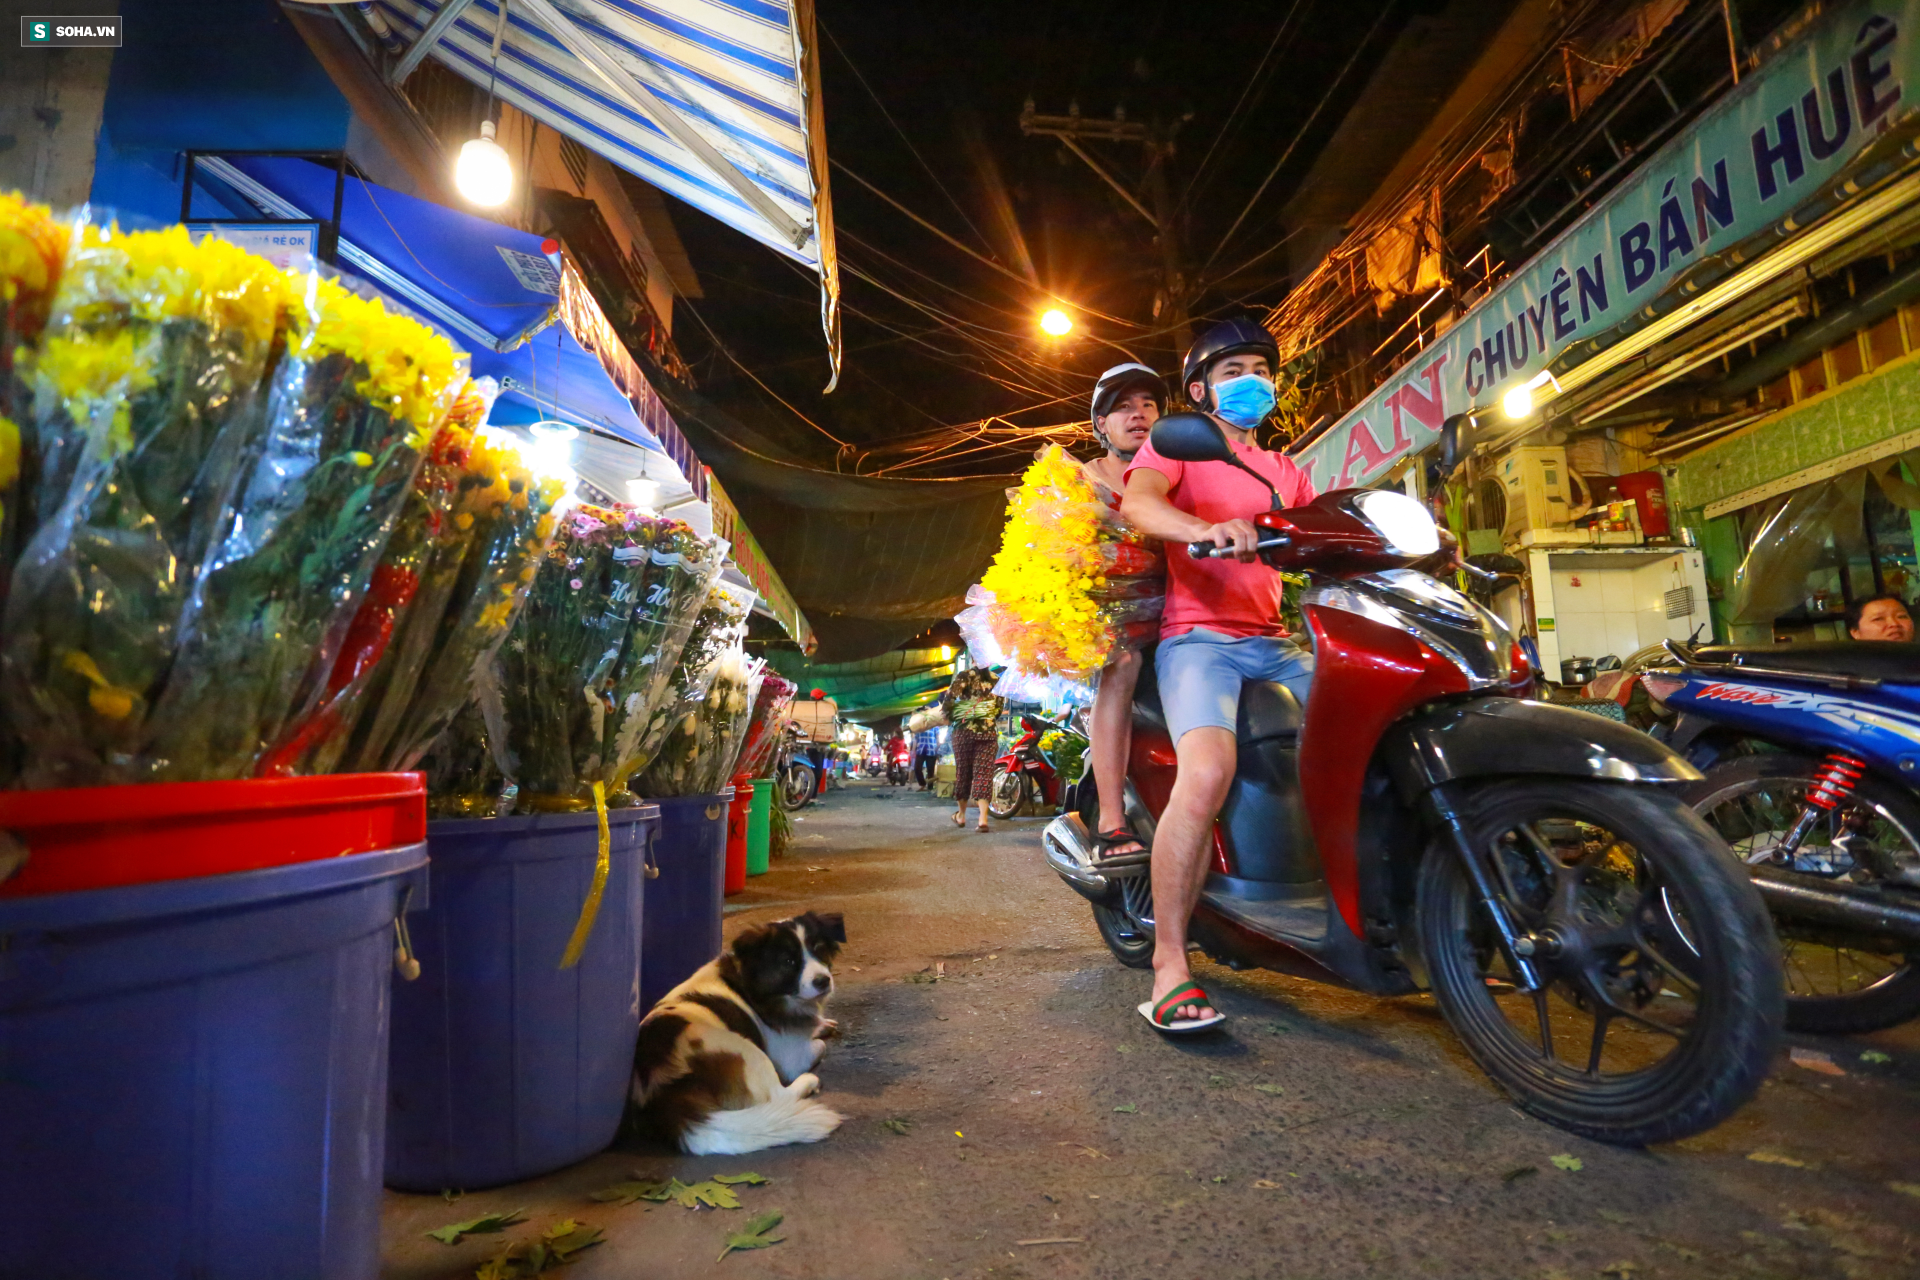 Chợ hoa 30 năm không ngủ ở Sài Gòn nhộn nhịp lúc 2 giờ sáng đón ngày 8/3 - Ảnh 2.